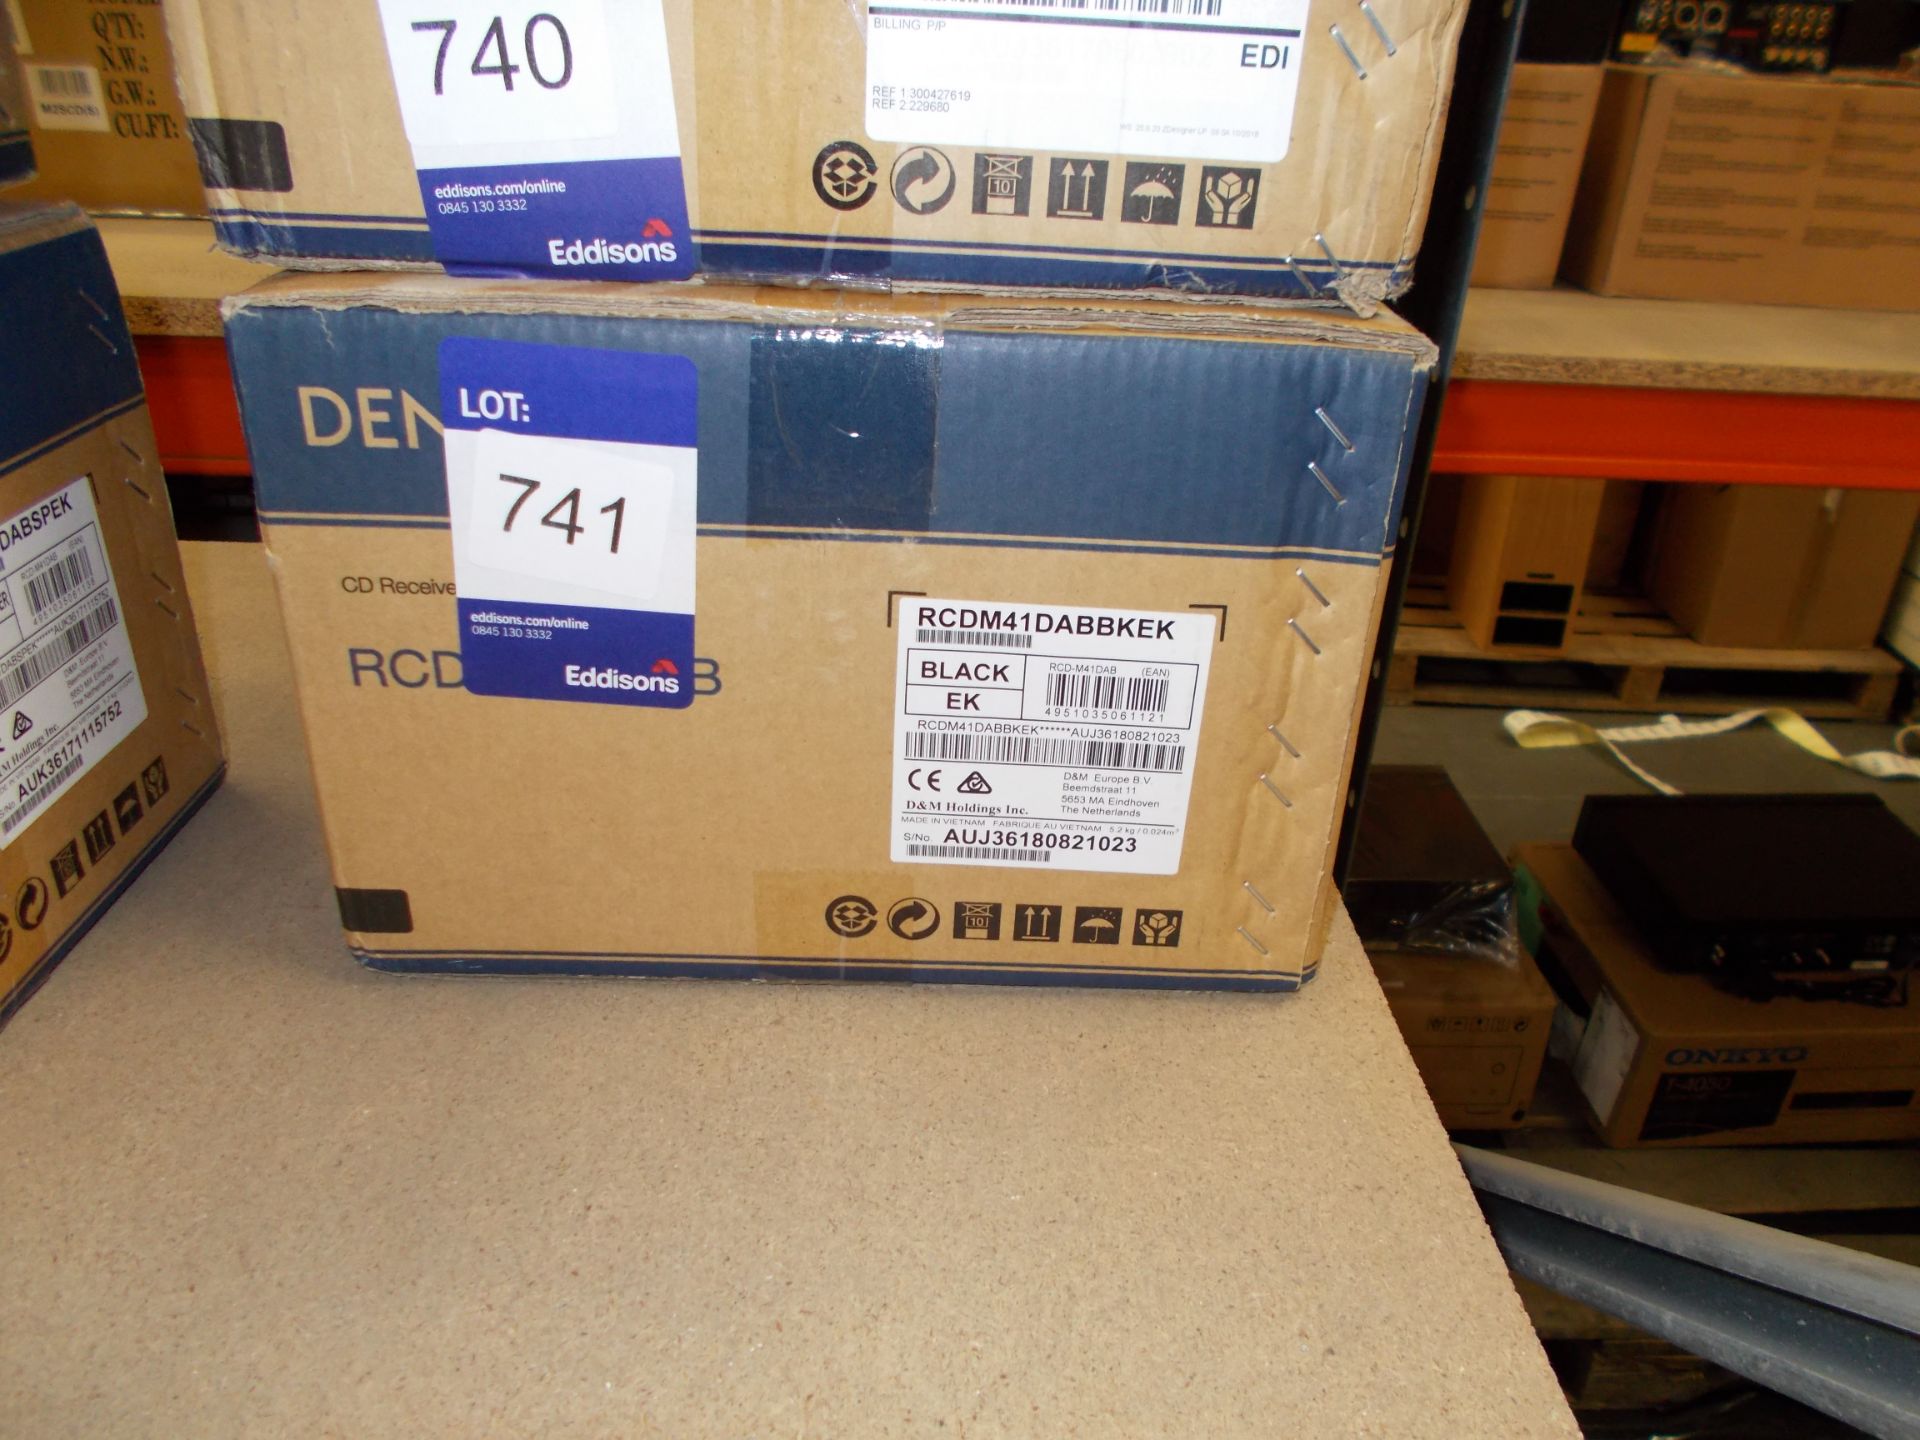 Denon RCD-M41 DAB Black CD Receiver with DAB Digital Radio (boxed) – RRP £229